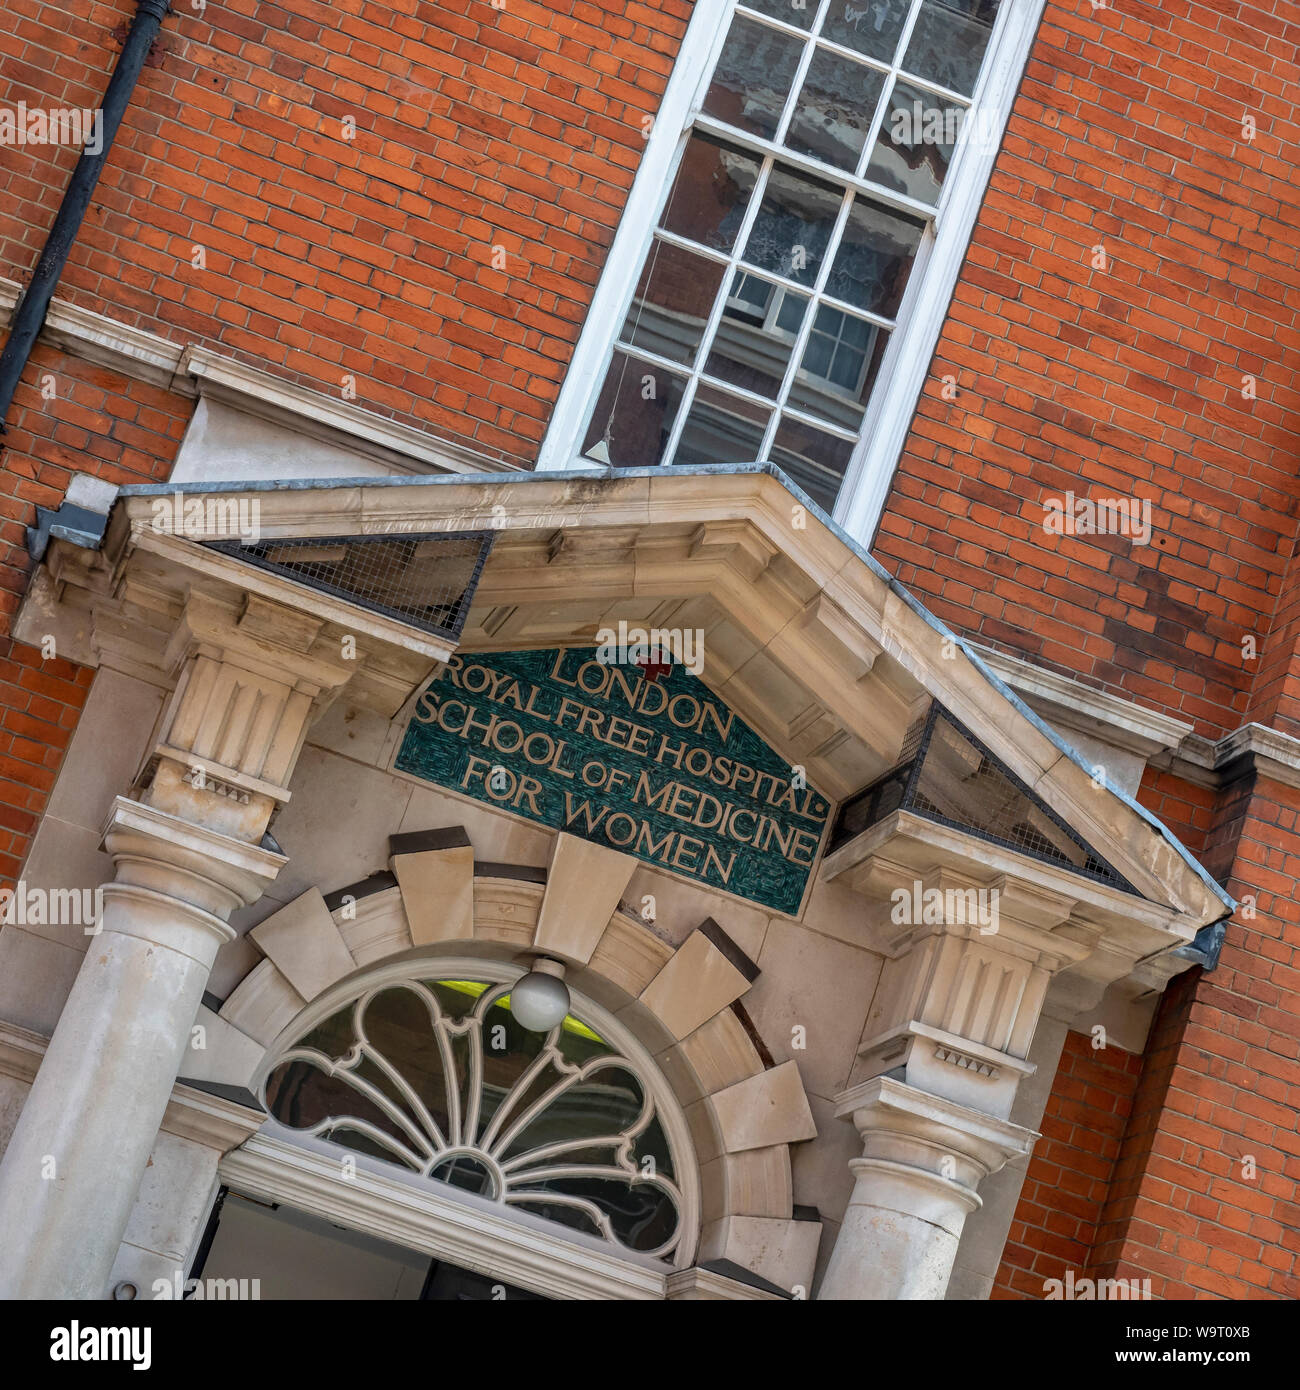 LONDRES, Royaume-Uni - 26 JUILLET 2018 : panneau au-dessus du bâtiment de la Royal Free Hospital School of Medicine for Women à Hunter Street Banque D'Images